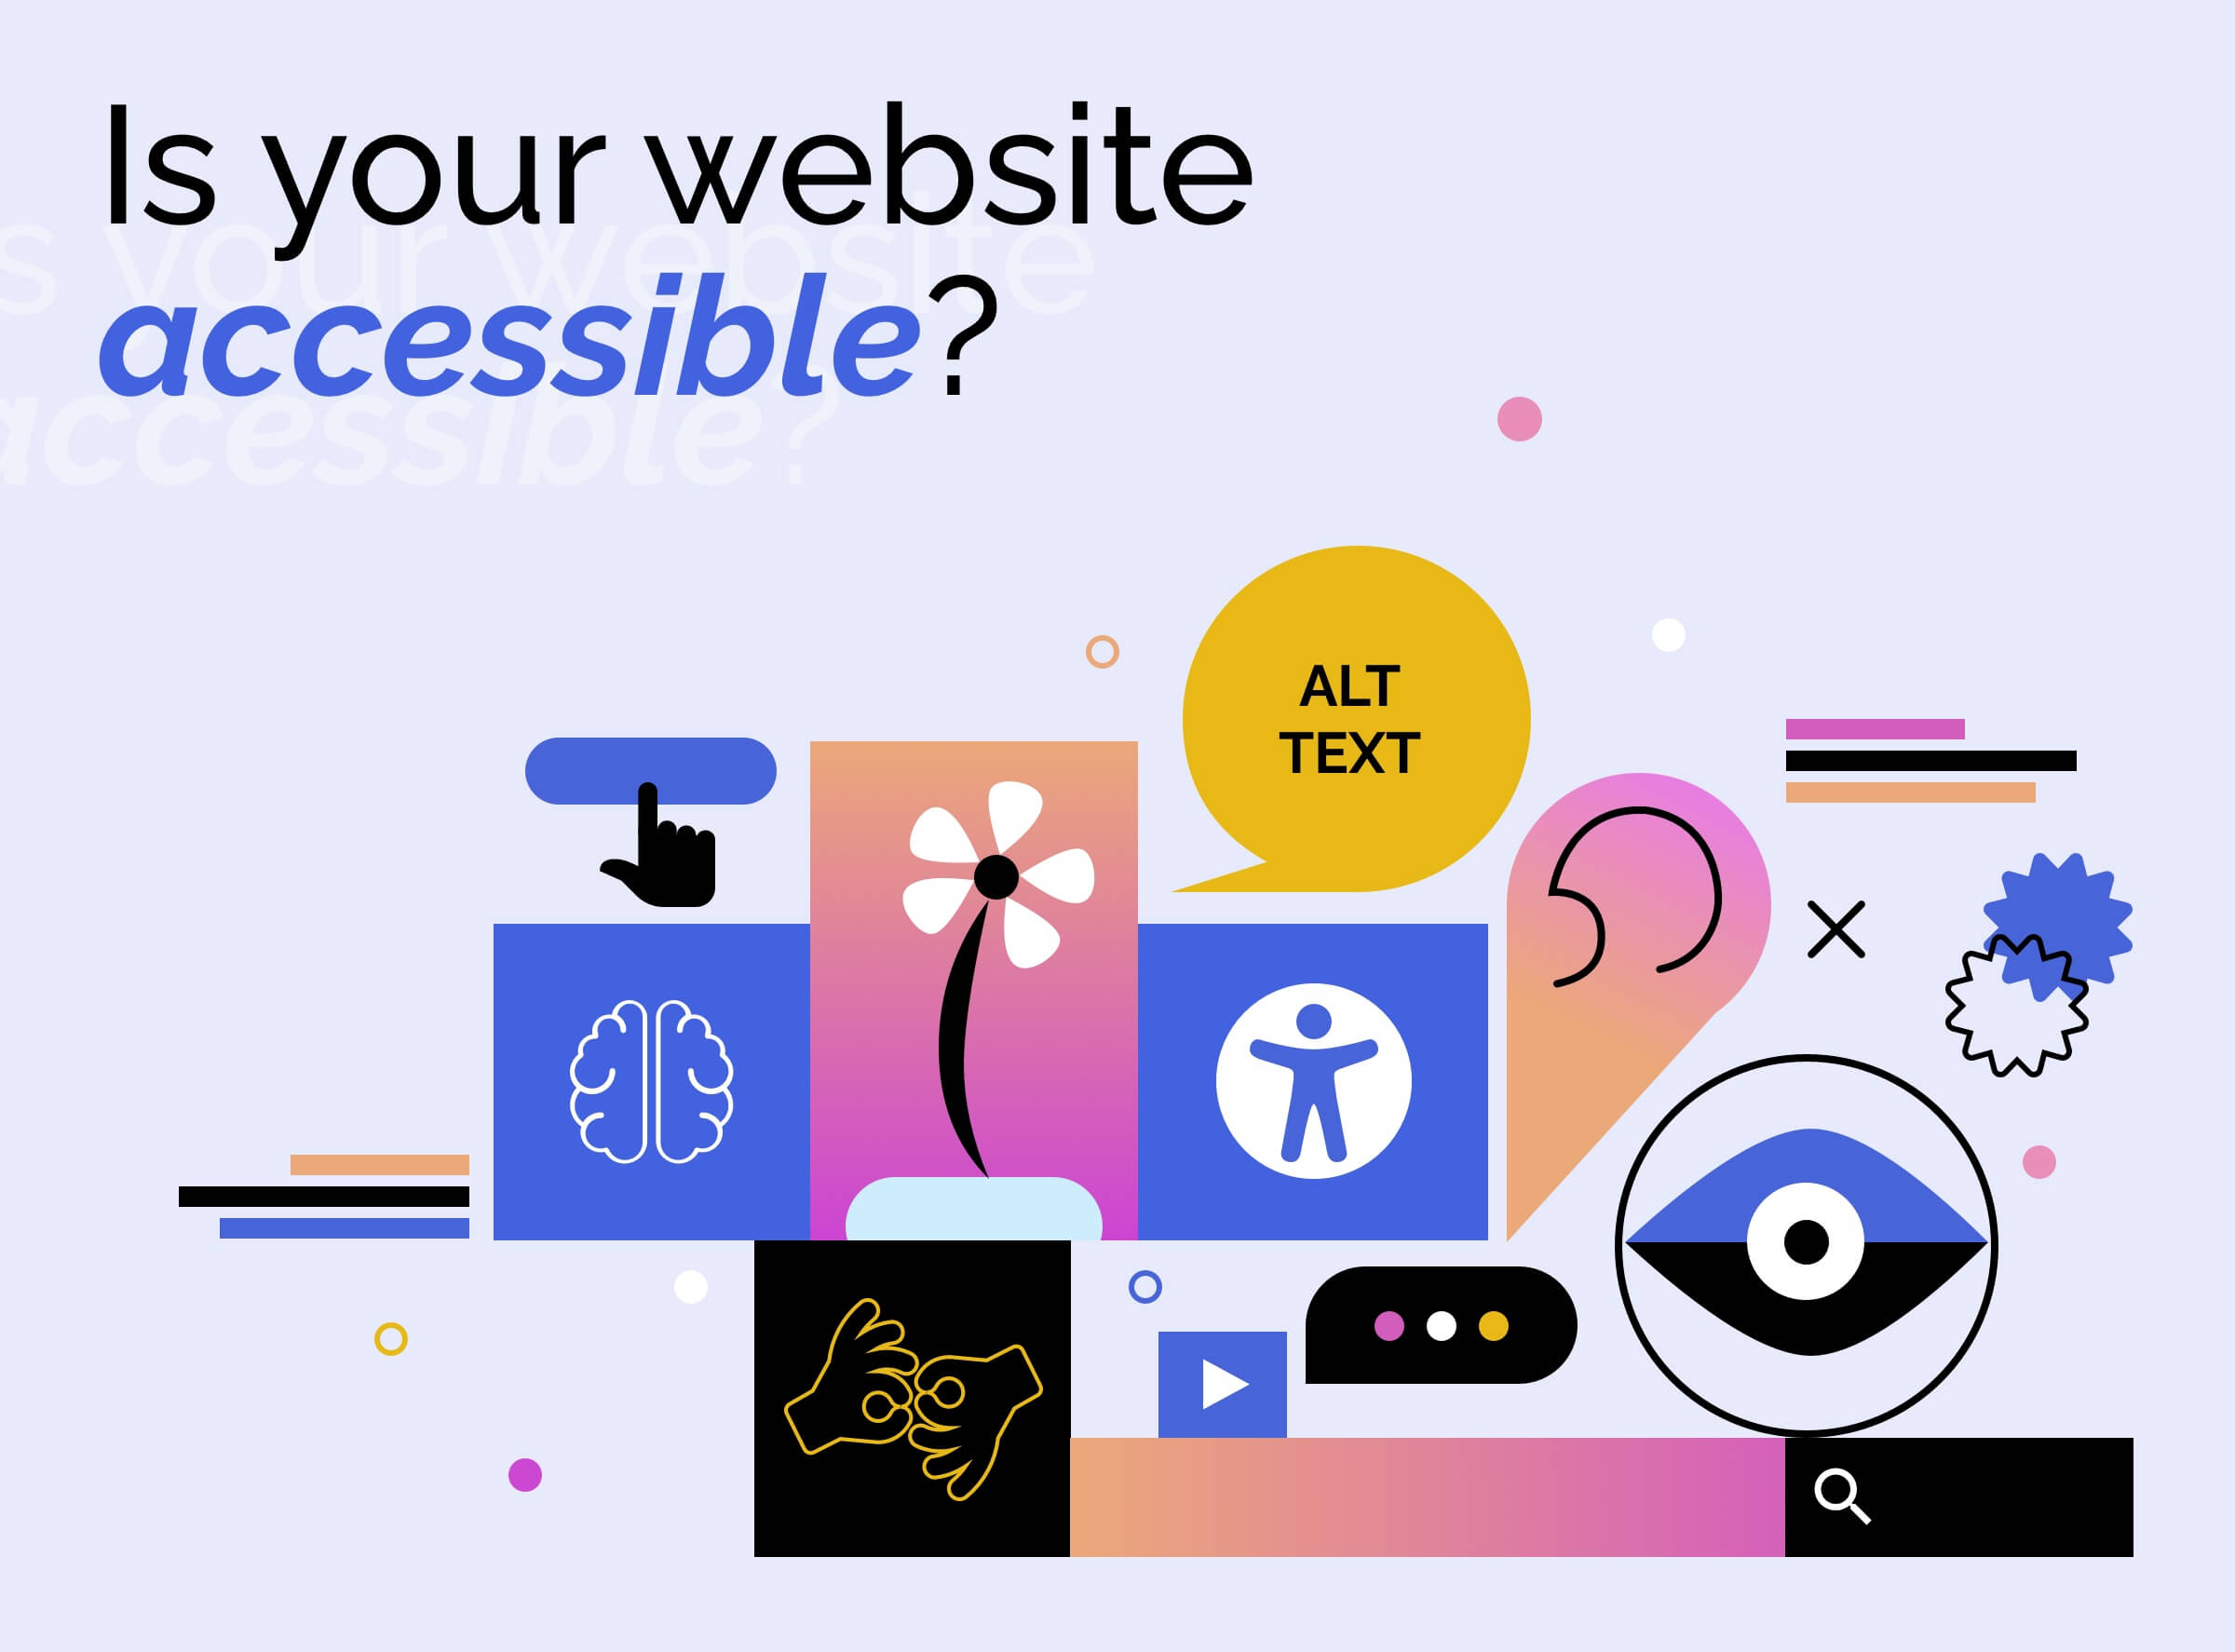 Il tuo sito web è accessibile? Aggiornalo secondo le norme dell’European Accessibility Act